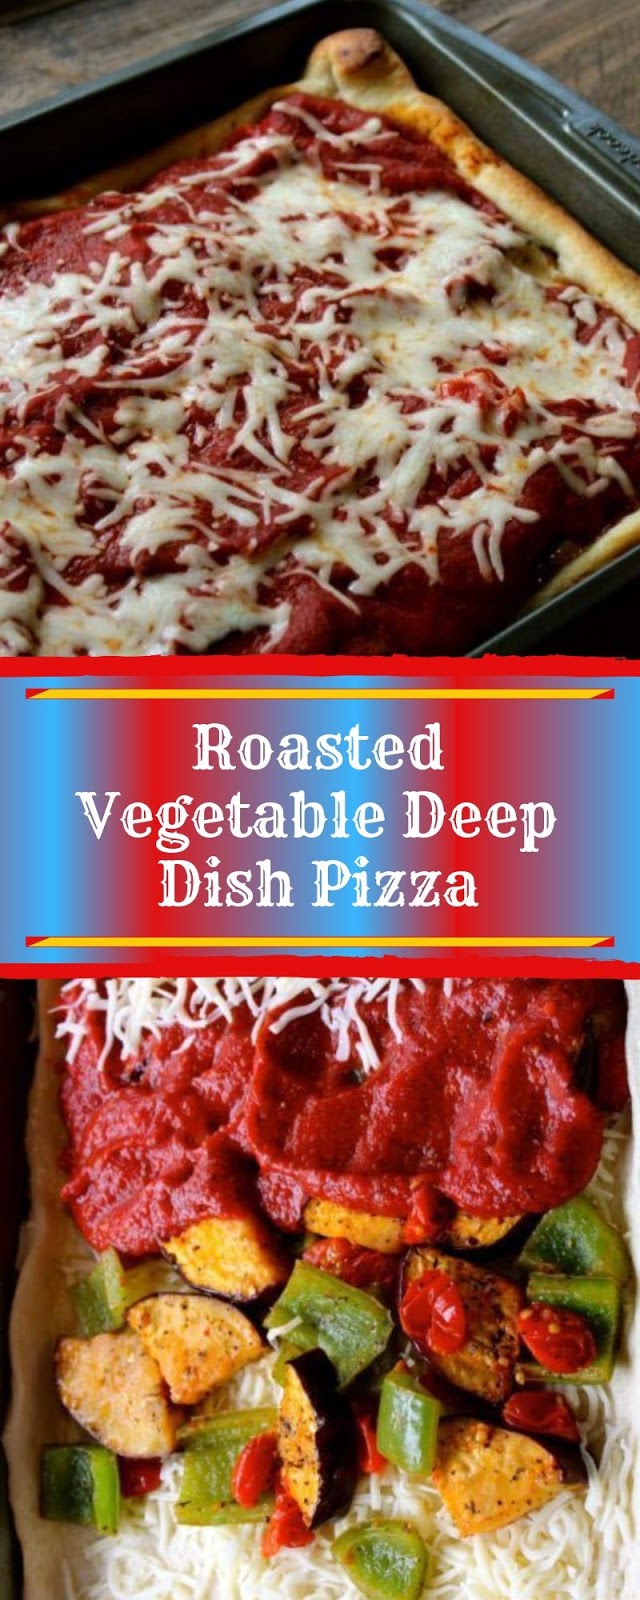 Roasted Vegetable Deep Dish Pizza